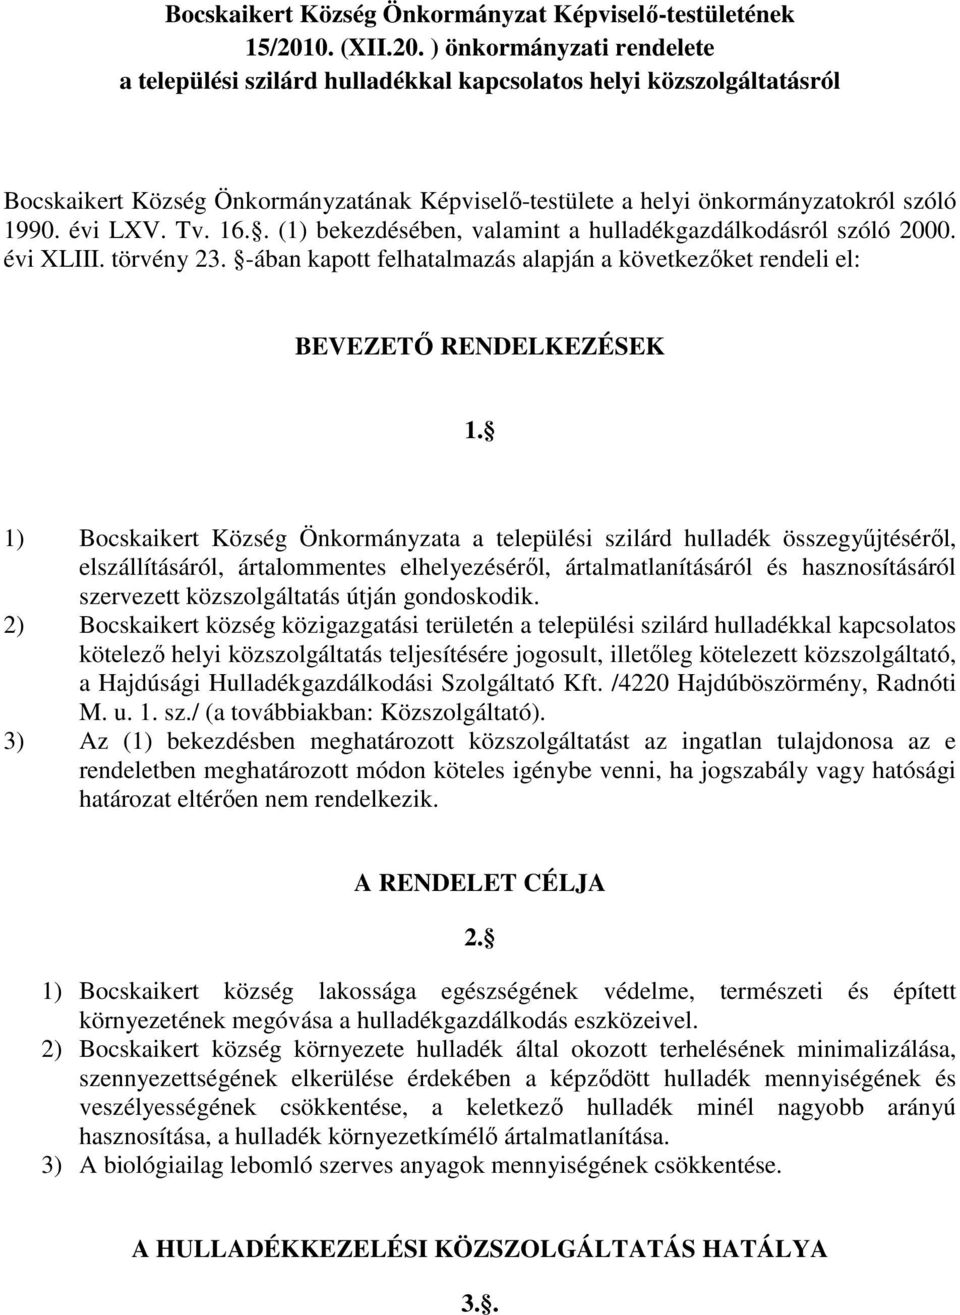 ) önkormányzati rendelete a települési szilárd hulladékkal kapcsolatos helyi közszolgáltatásról Bocskaikert Község Önkormányzatának Képviselő-testülete a helyi önkormányzatokról szóló 1990. évi LXV.